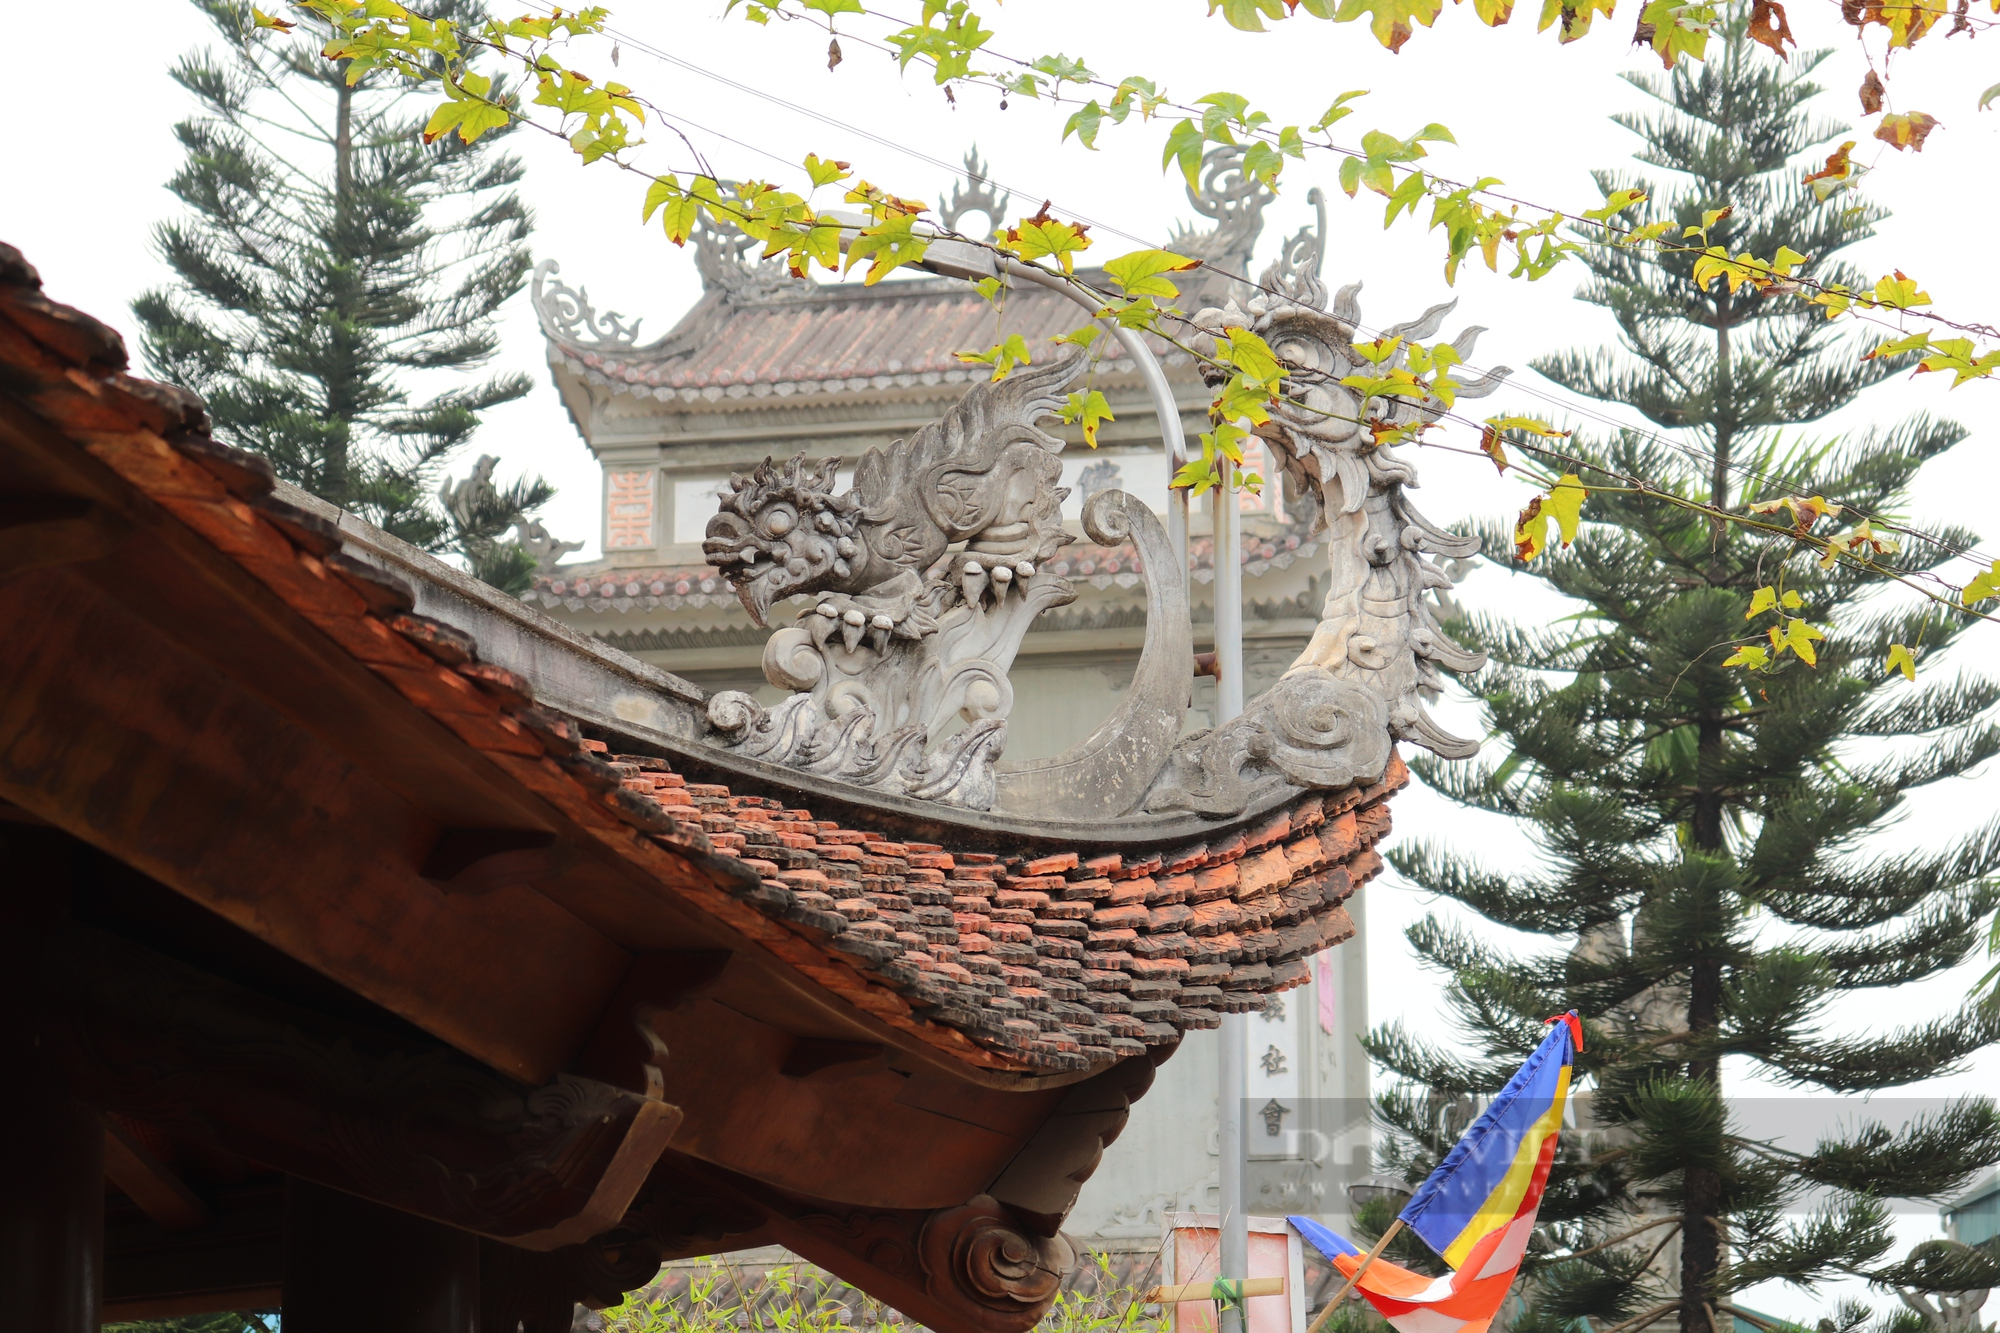 Kiến trúc đặc biệt bên trong ngôi chùa cổ ở Hà Nội - Ảnh 4.